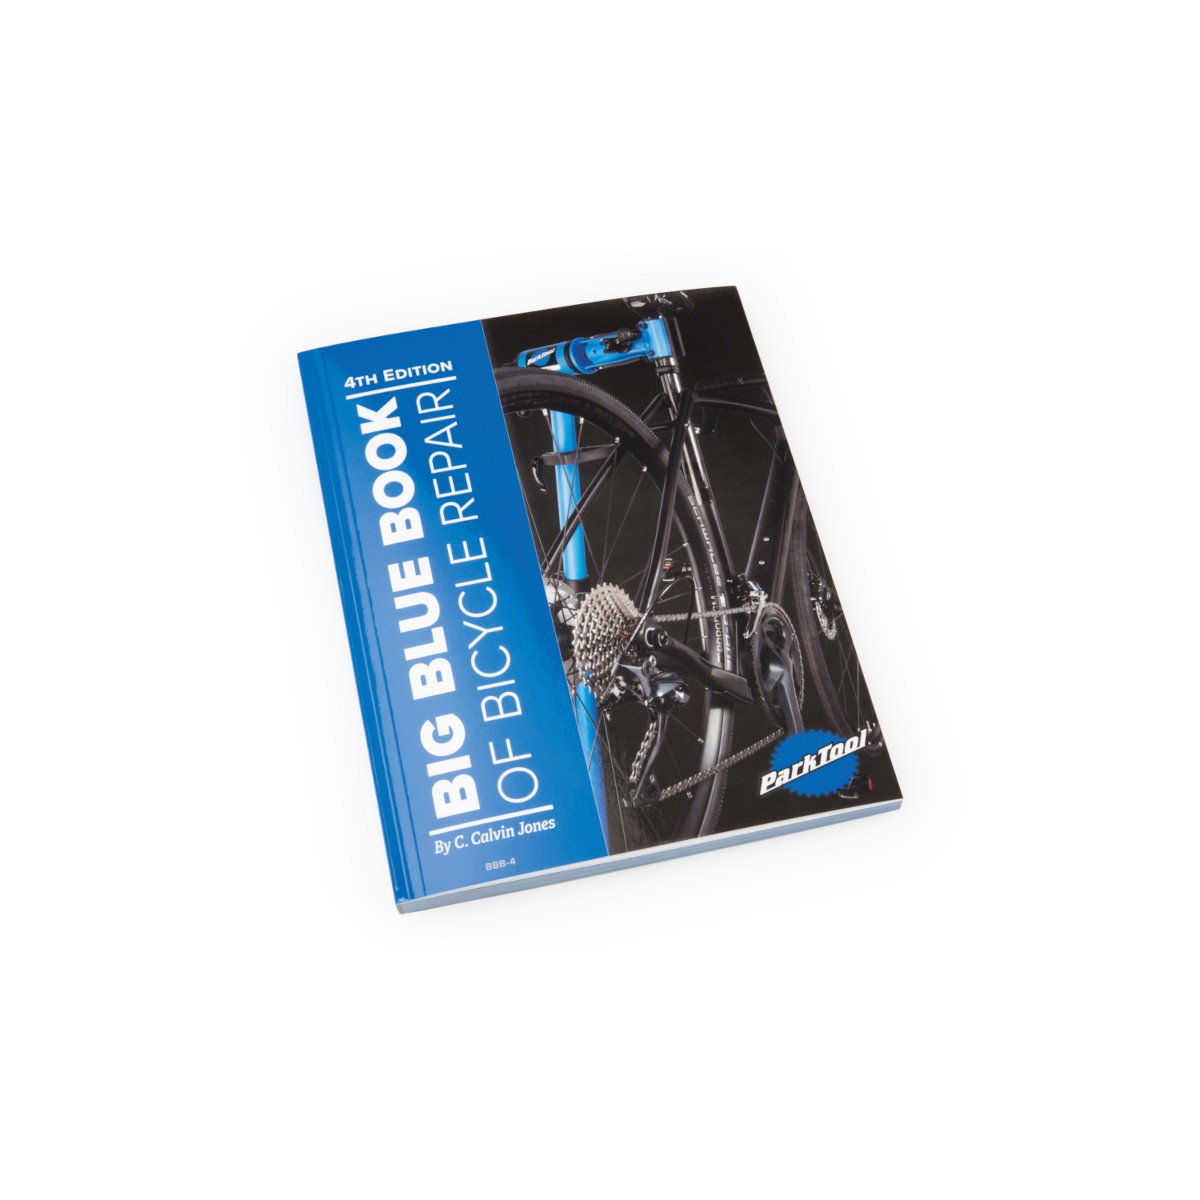 Park Tool Livre d'information pour réparations de vélo (anglais)